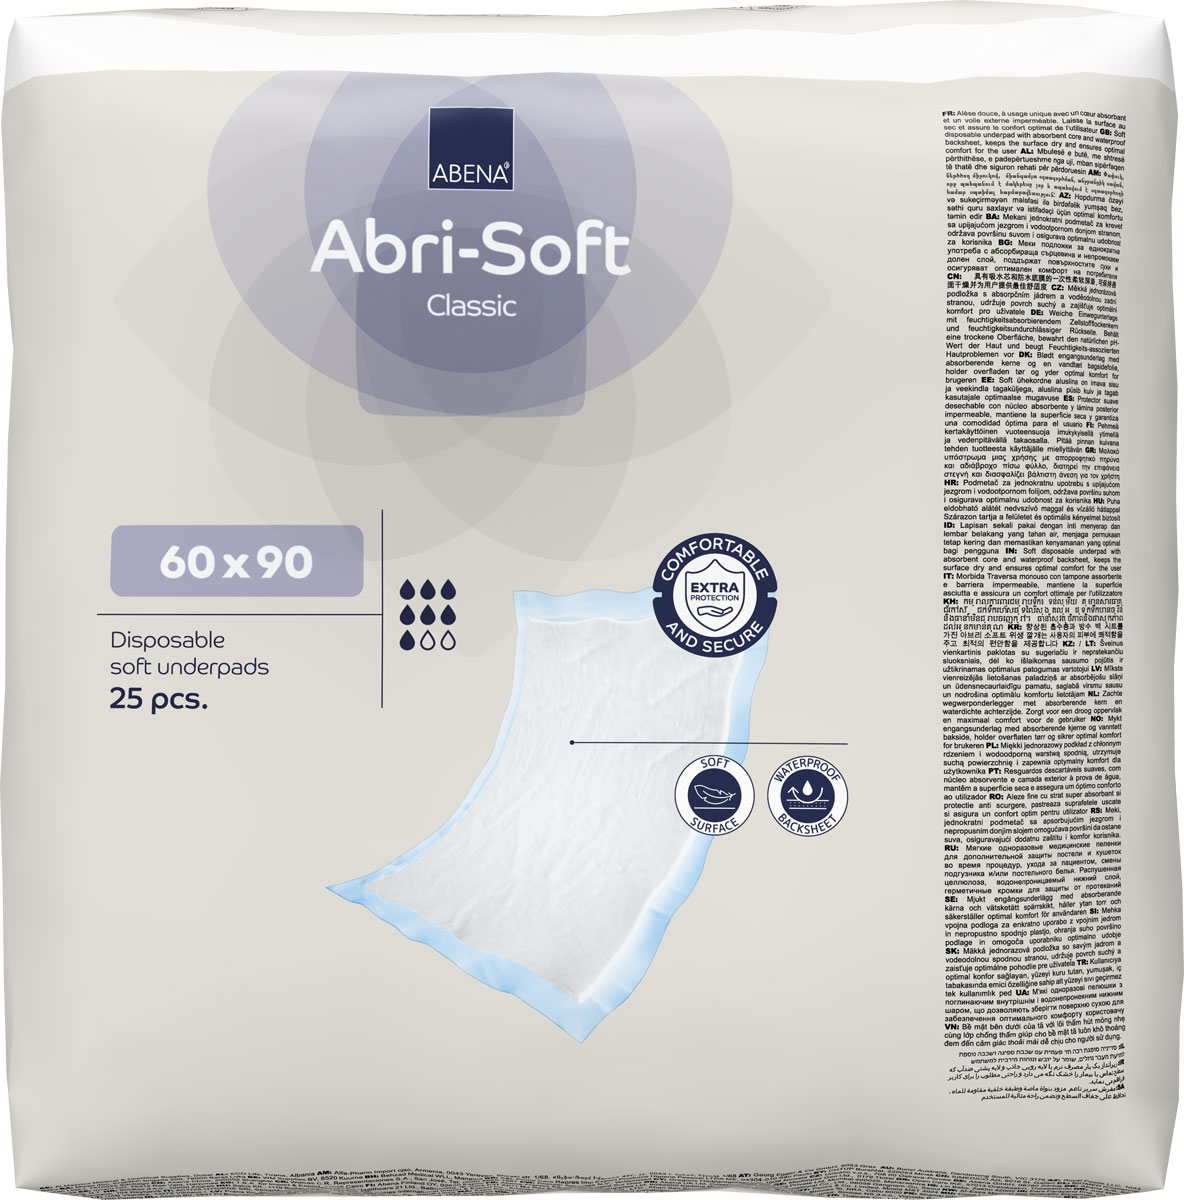 ABENA Abri-Soft CLASSIC Betteinlagen 60 x 90cm (25 Stück Einzelpackung)